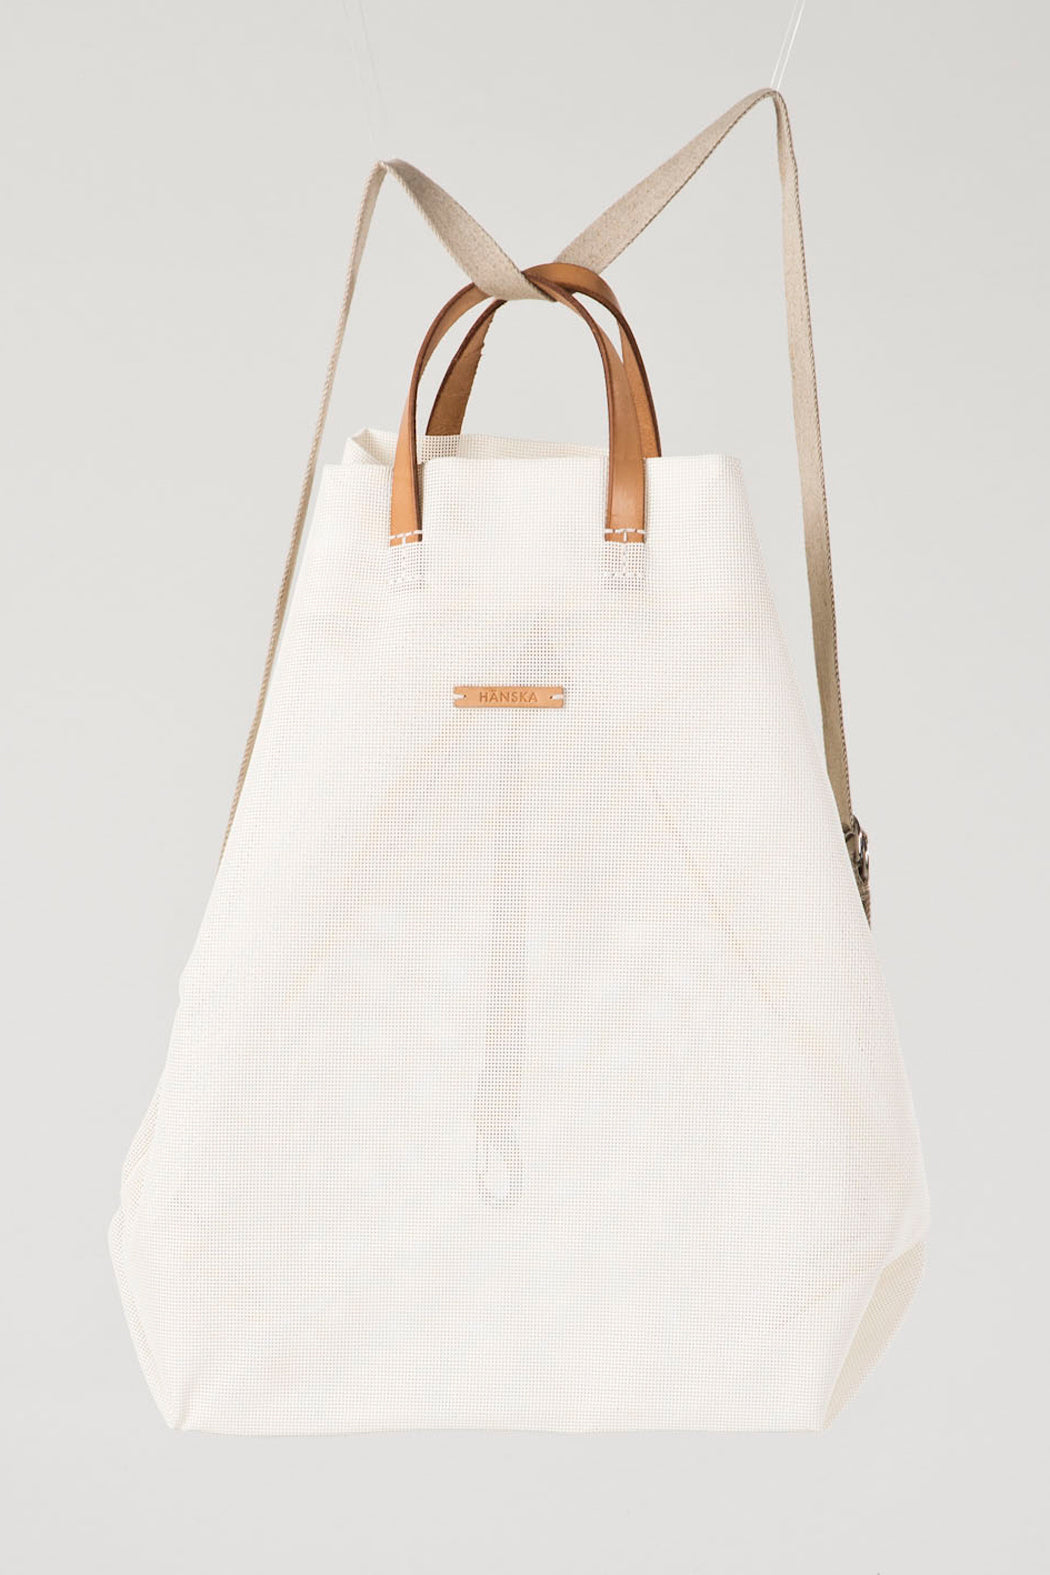 White Moire Shopper Backpack by Hänska